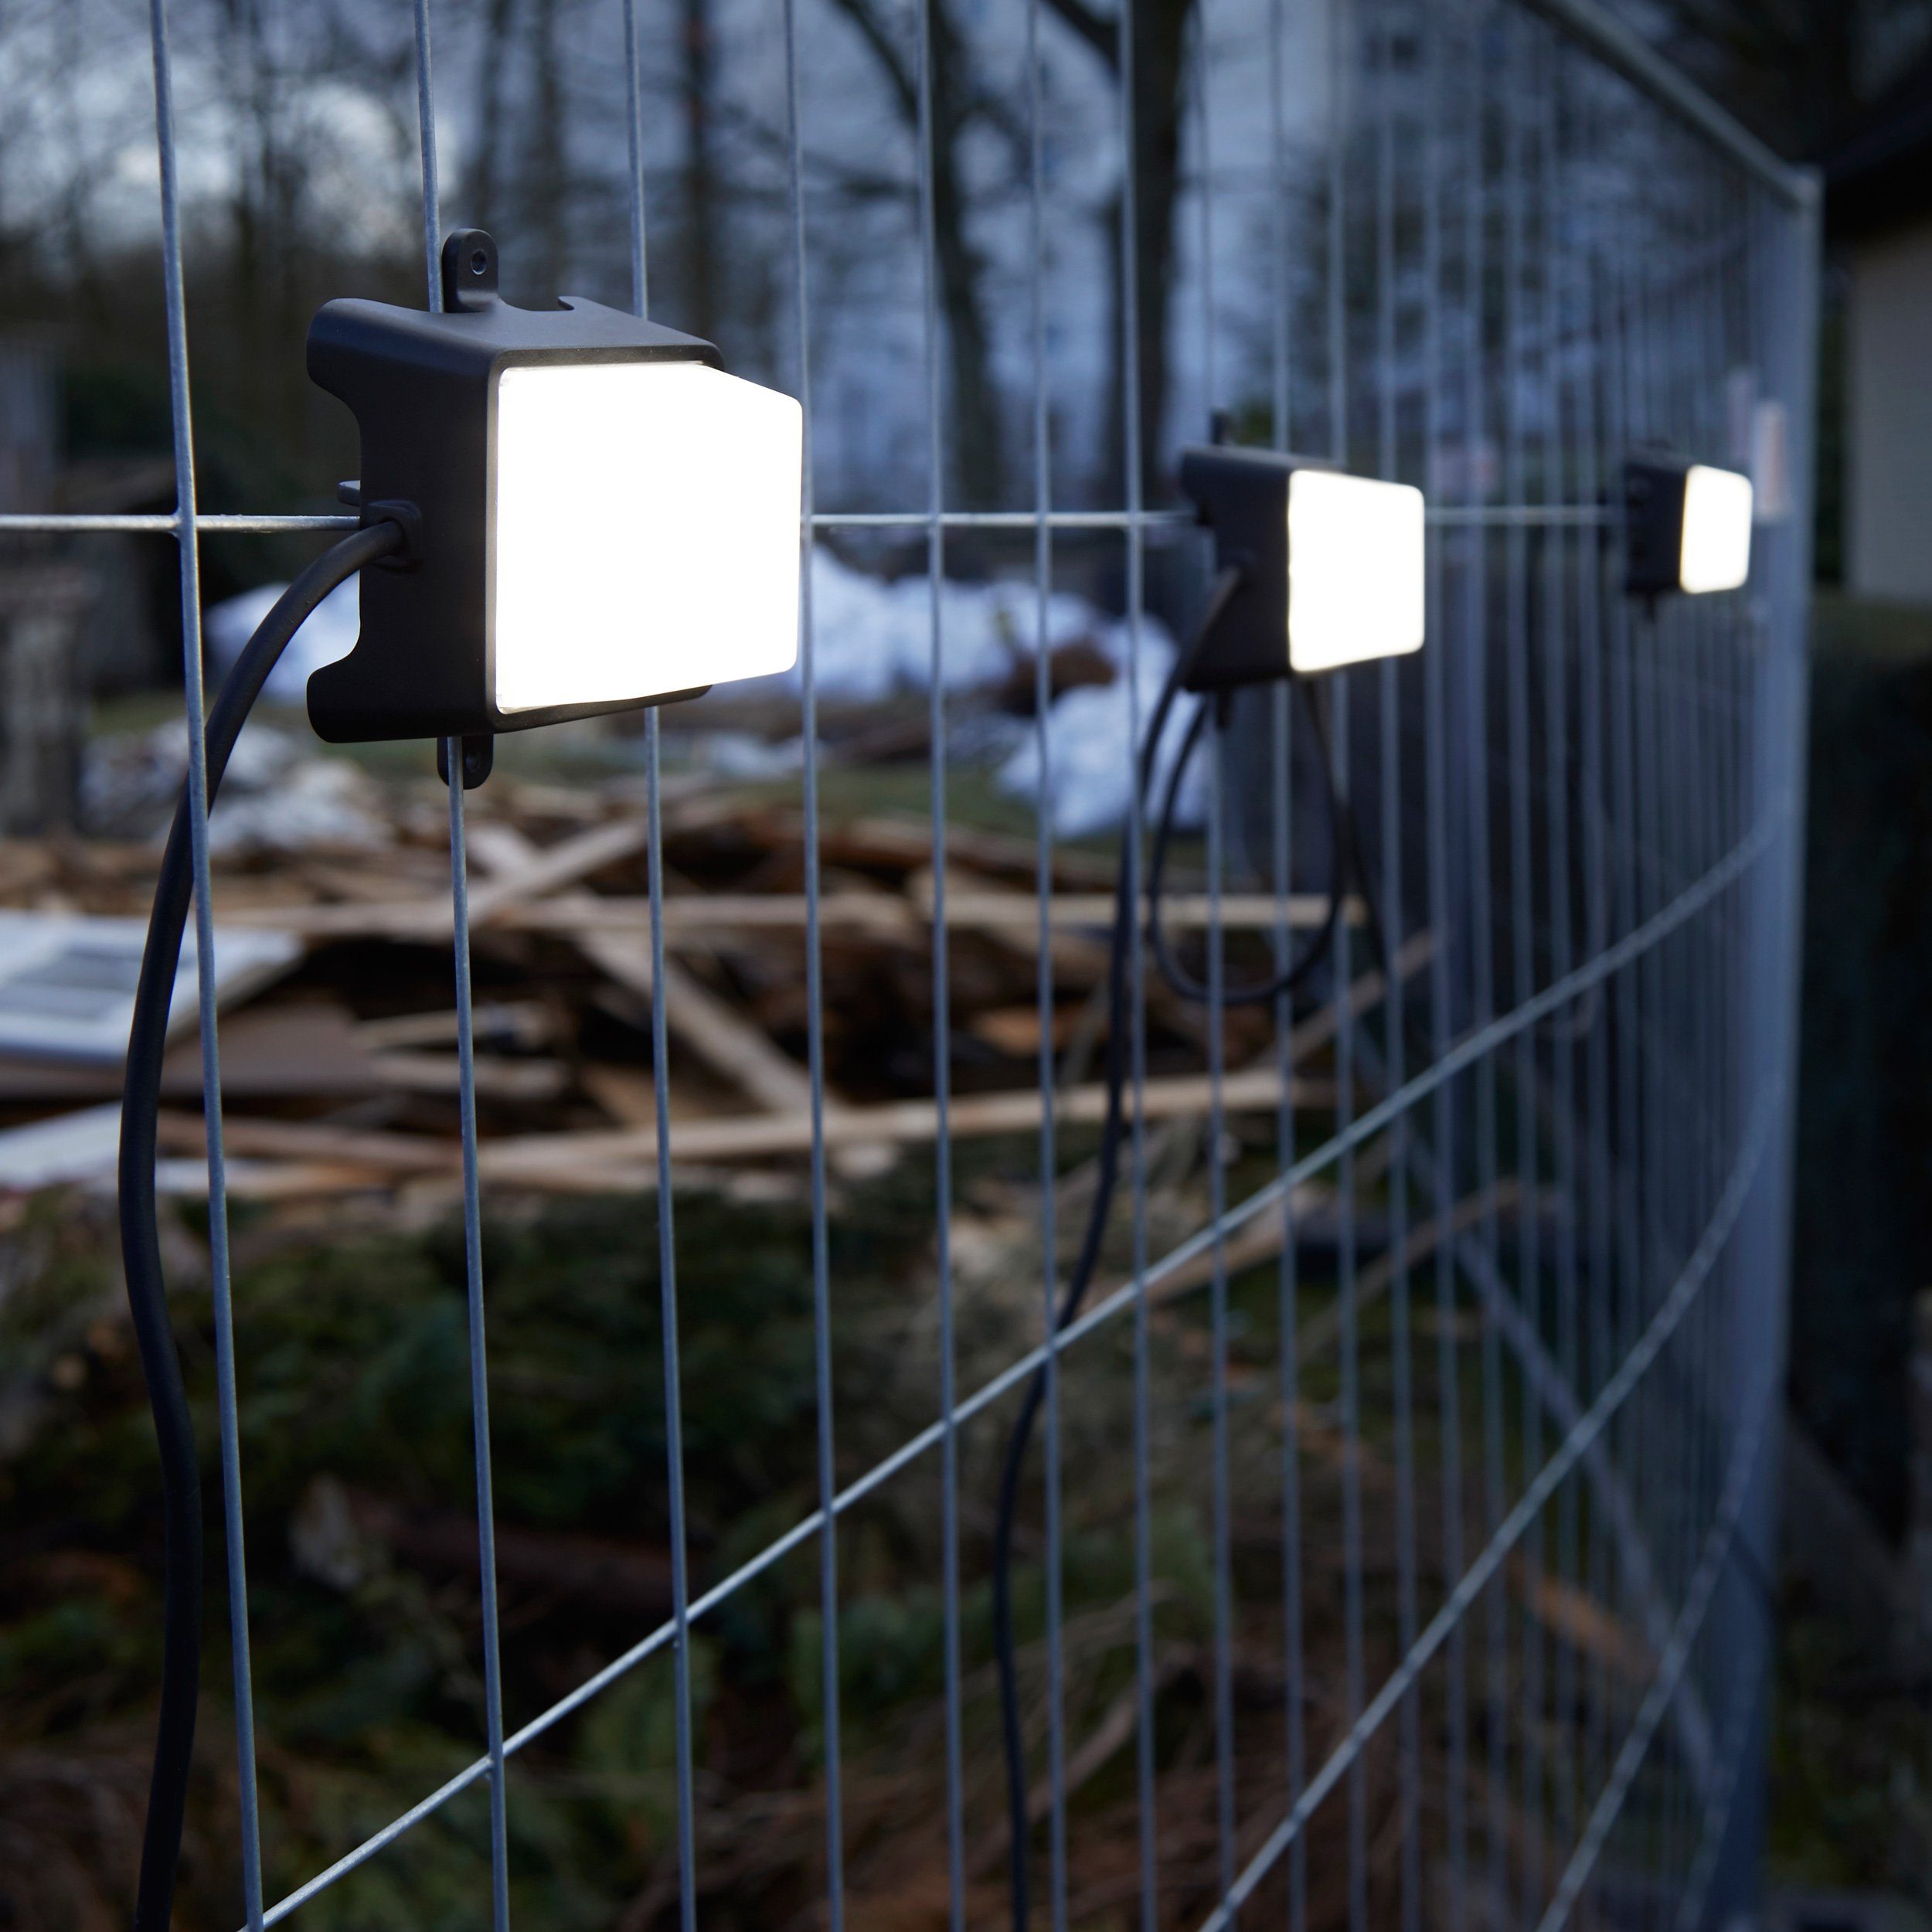 Northpoint LED Arbeitsleuchte Universal Leuchtenkette, erweiterbar, 4000K LED helle integriert, Baustrahler, 3 Neutralweiß, Lampen, Gartenlampe Arbeitslampe, neutralweiß, als etc. Garagenlicht, perfekt fest